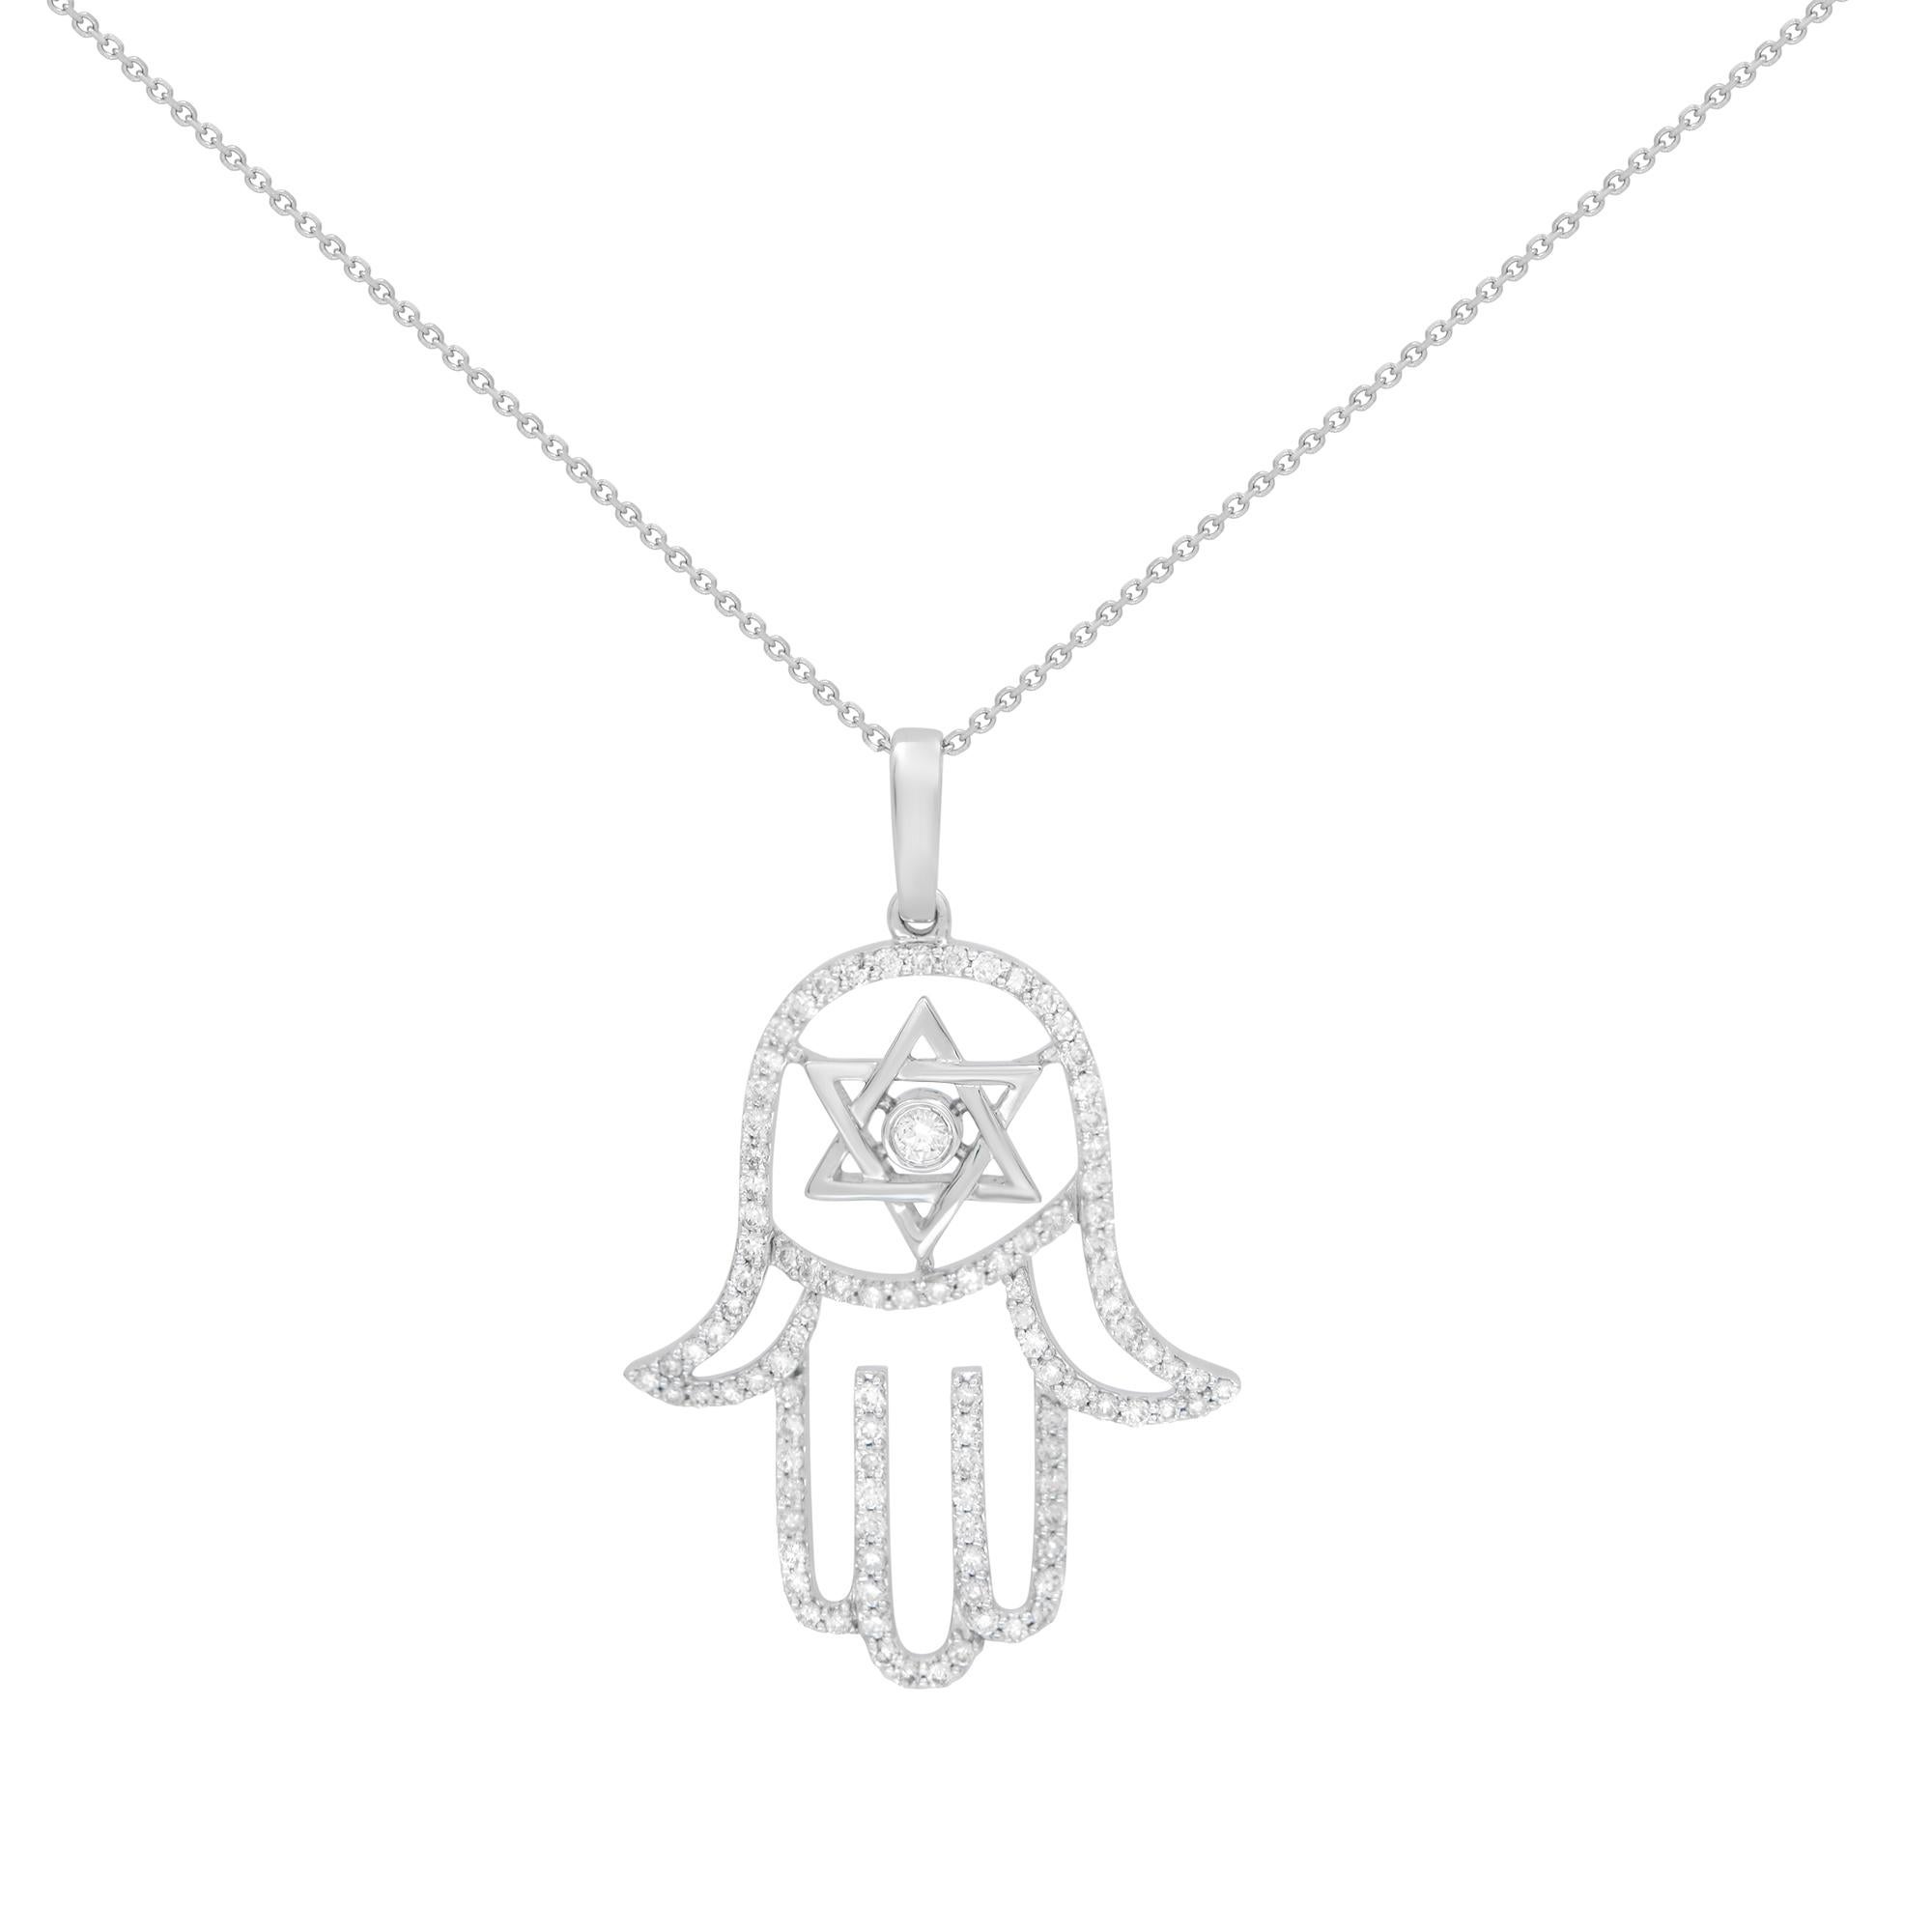 Le signe de l'étoile de David et les symboles Hamsa sont unifiés dans ce pendentif majestueux qui comporte 0,65 diamant blanc rond brillant en serti micro-pavé. Fabriqué en or blanc 14k. Diamant de couleur G-H et de pureté VS-SI. Taille du pendentif